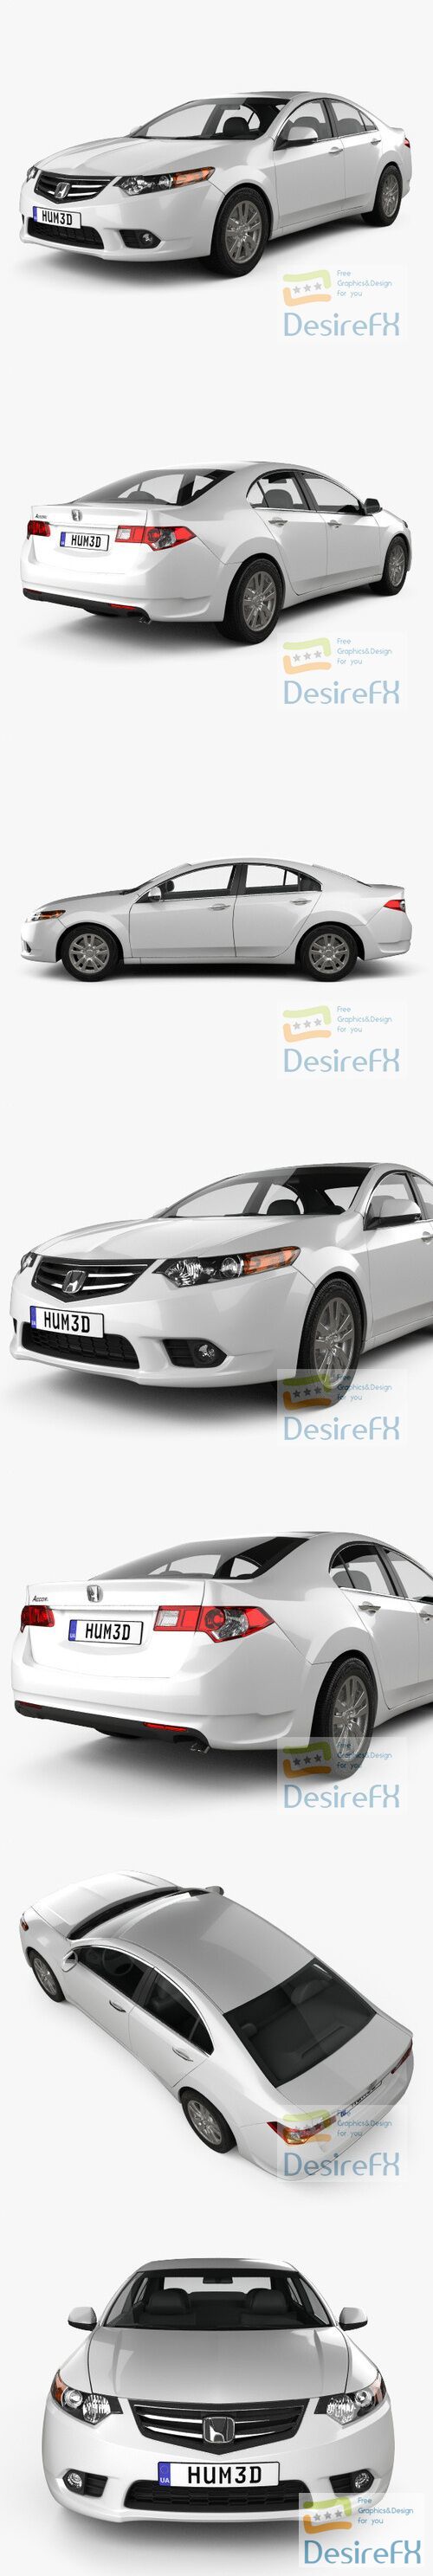 Honda Accord Sedan 2011 3D Model